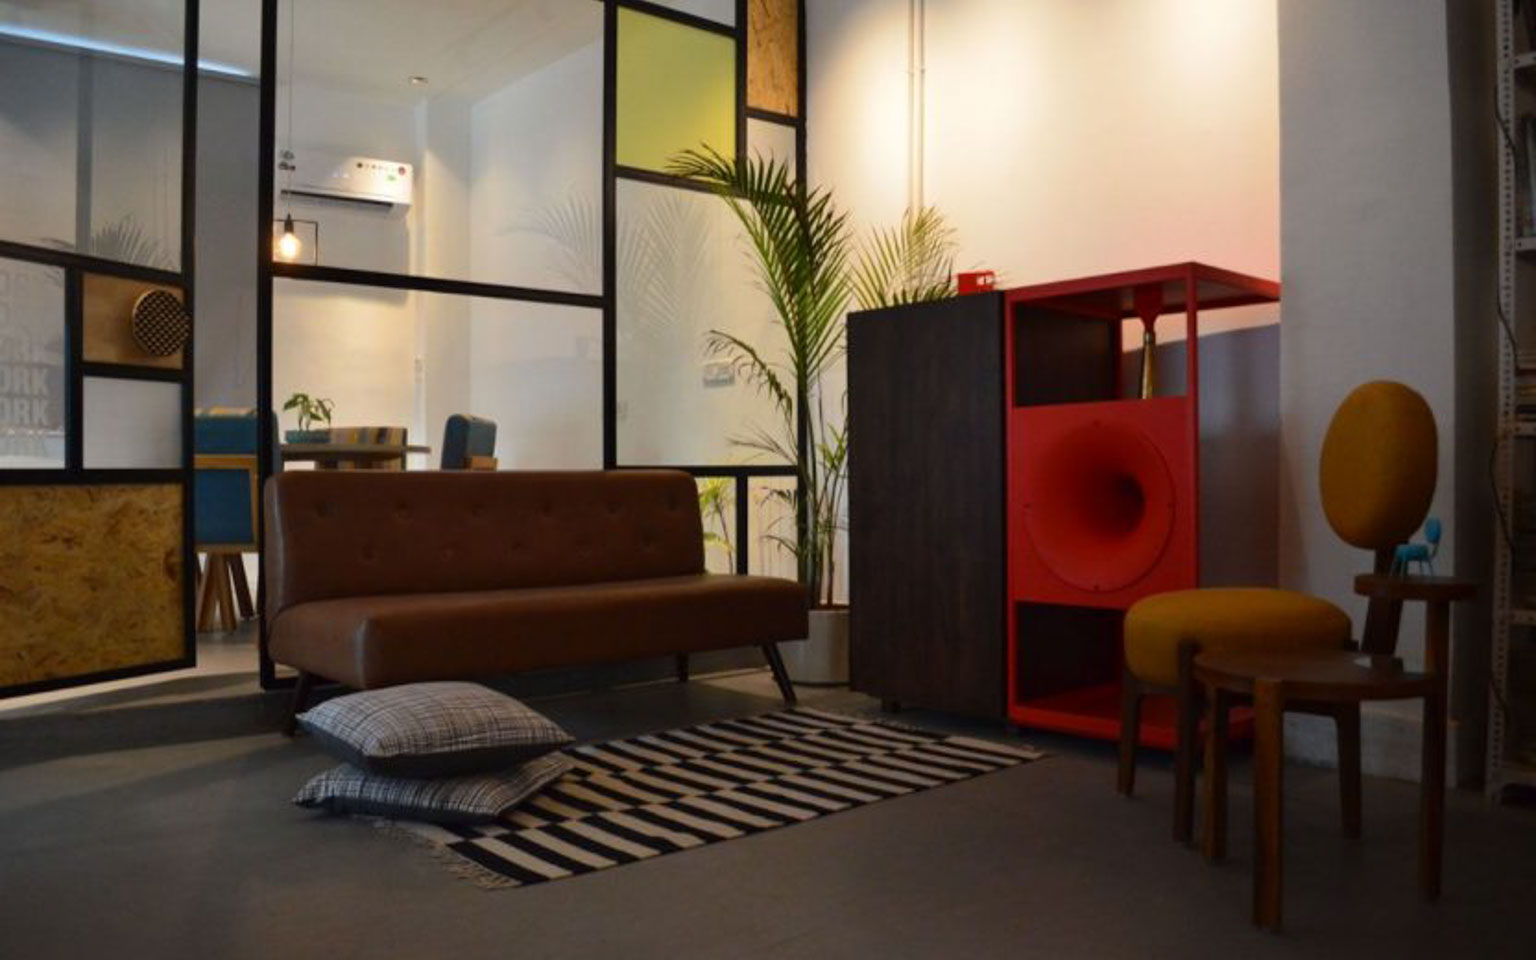 a New Delhi-based interior and furniture design studio&rsquo;s office